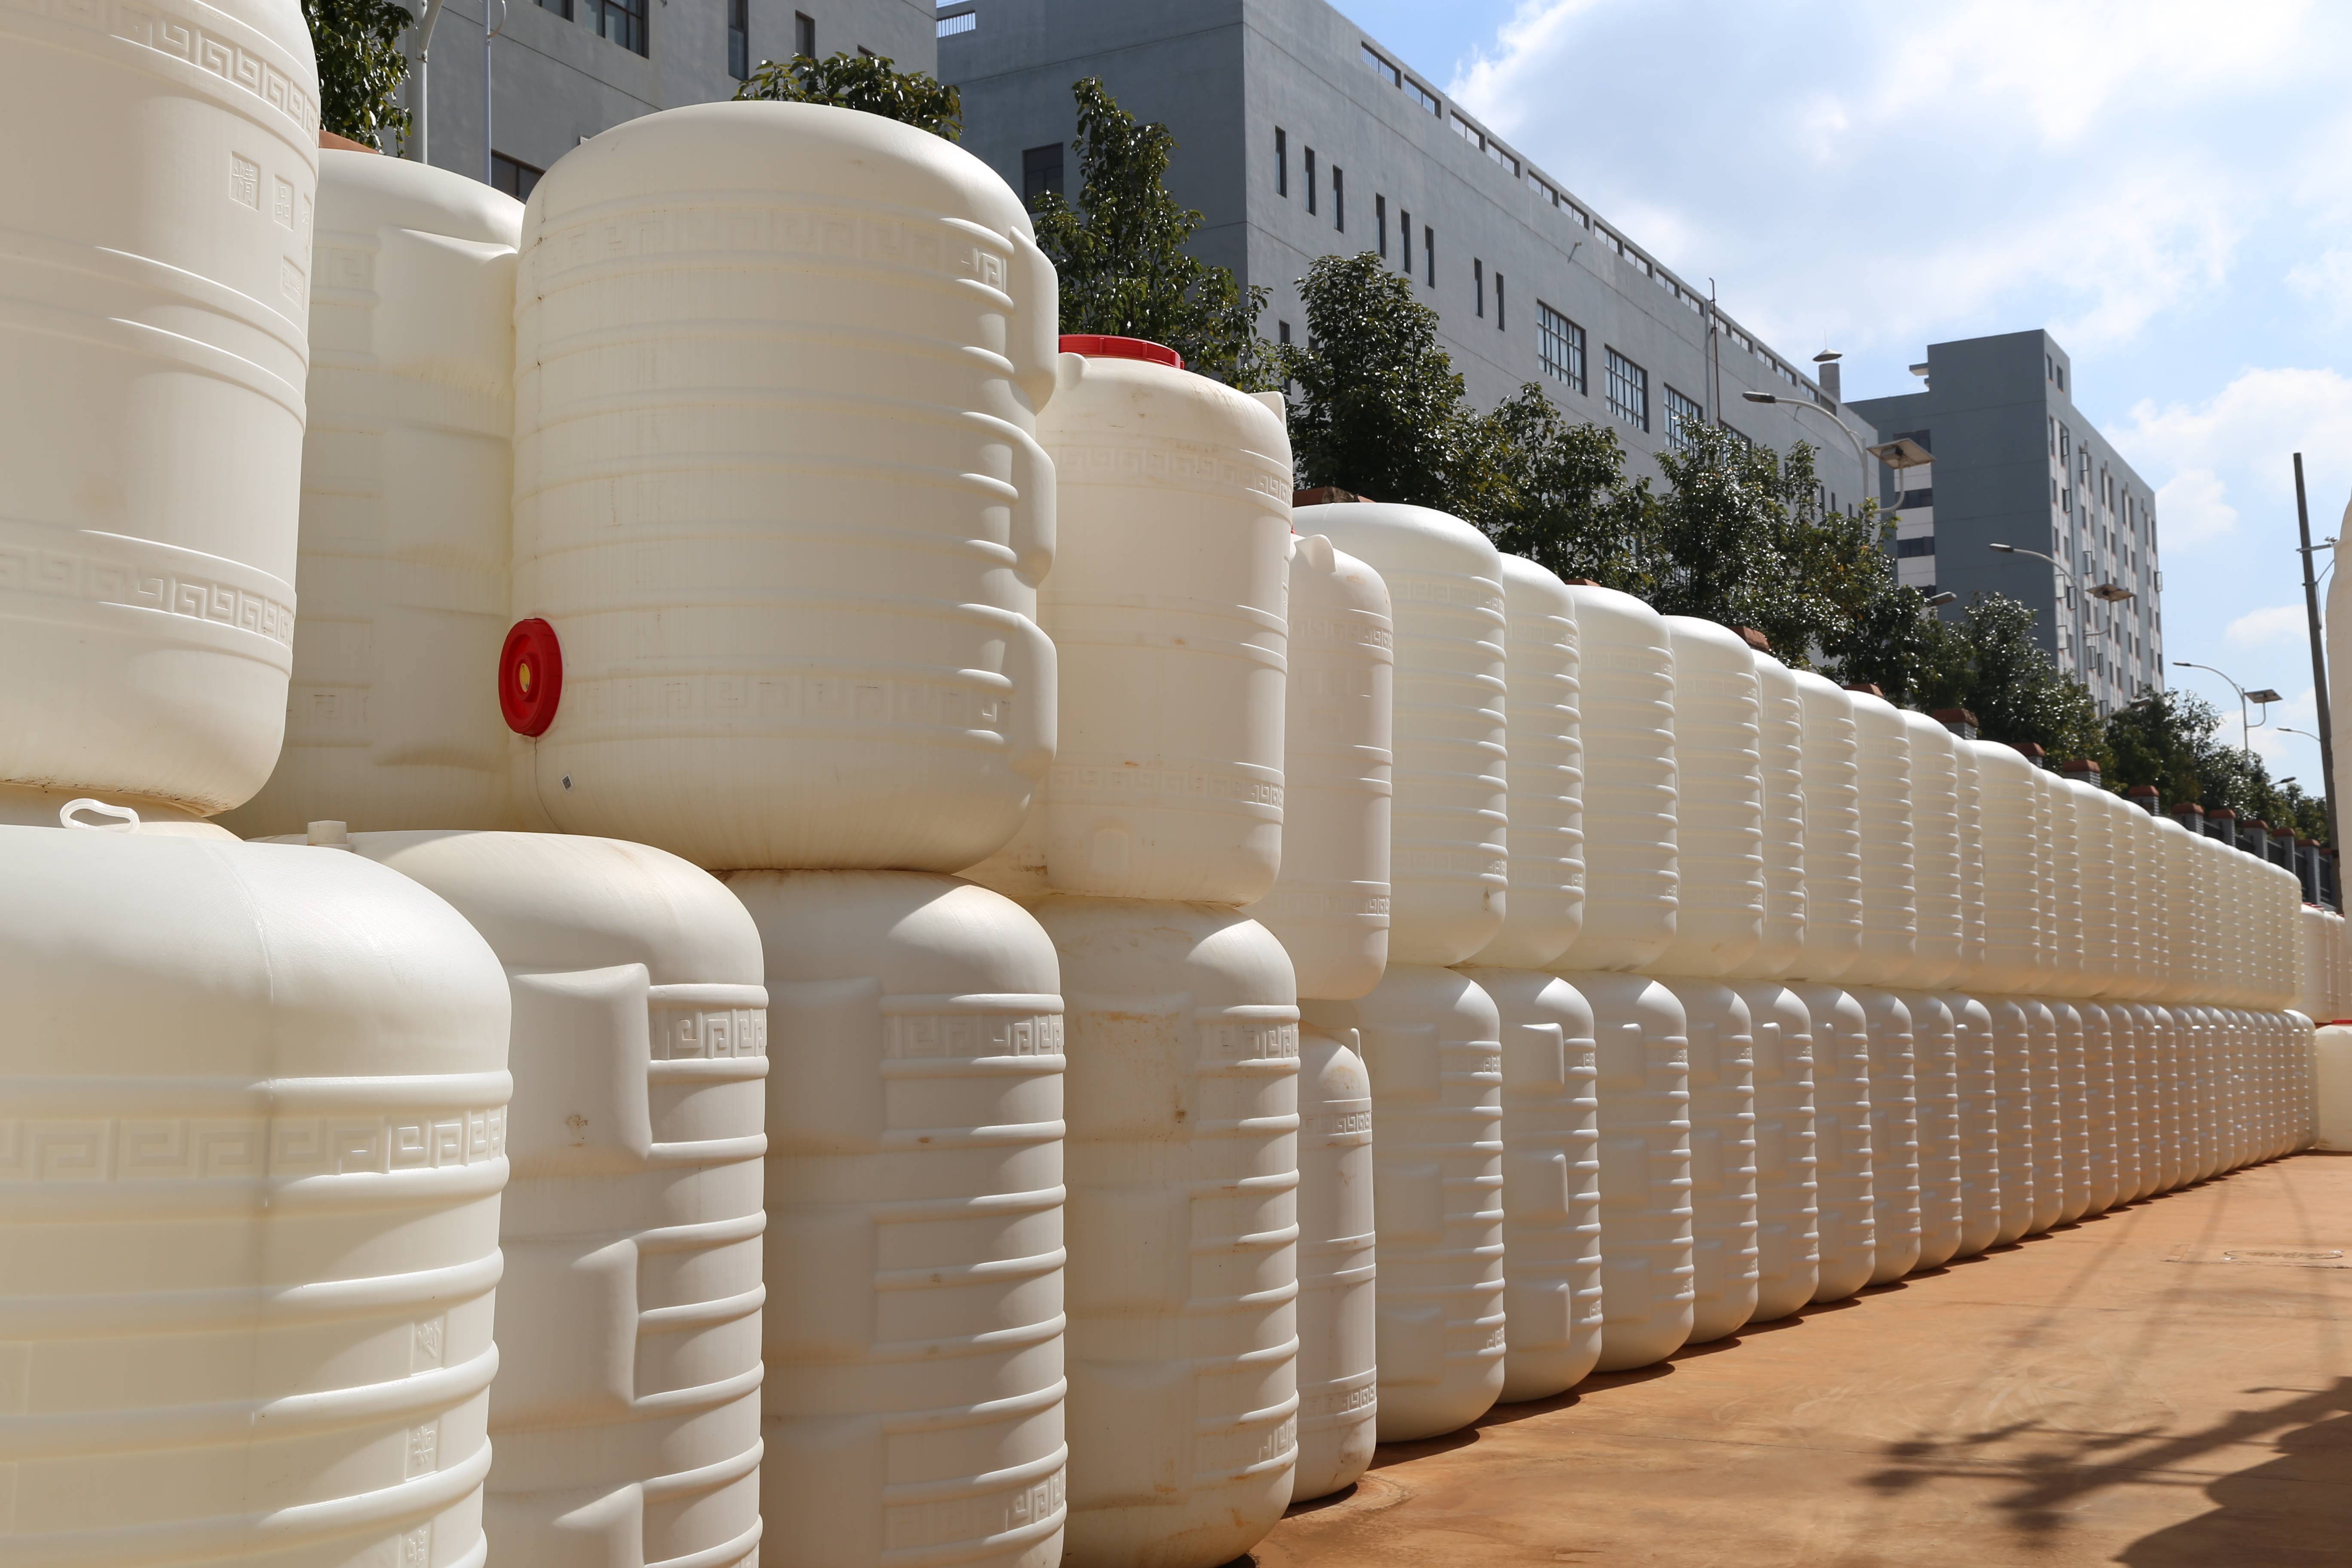 2吨农业生产灌溉储水桶昆明批发厂